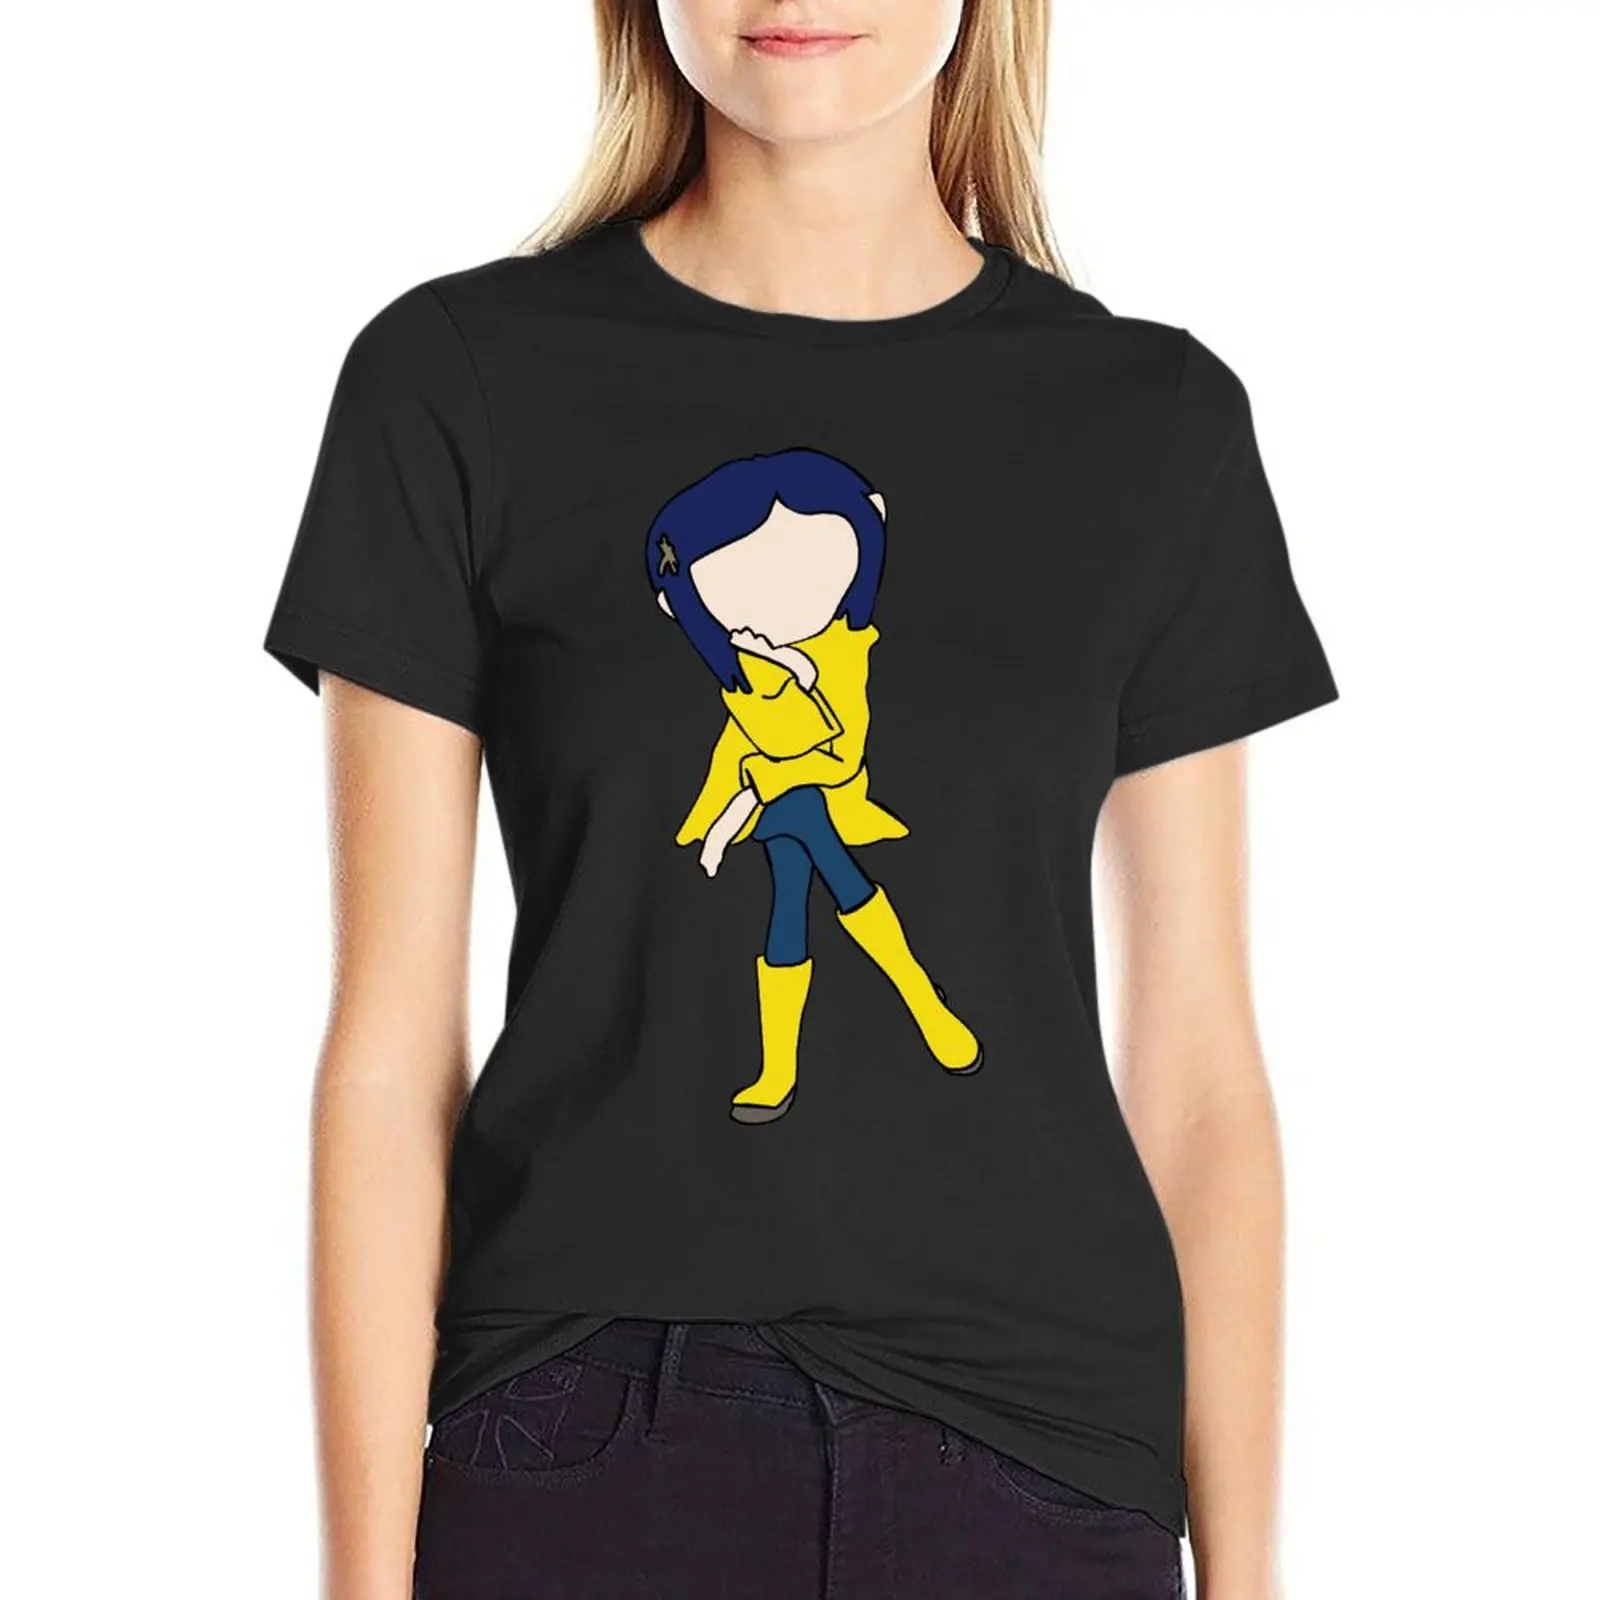 

Футболка Coraline с изображением Кубо лайки Генри селлика Нил Гейман женская футболка с рисунком уличная одежда хлопковая футболка с коротким ...